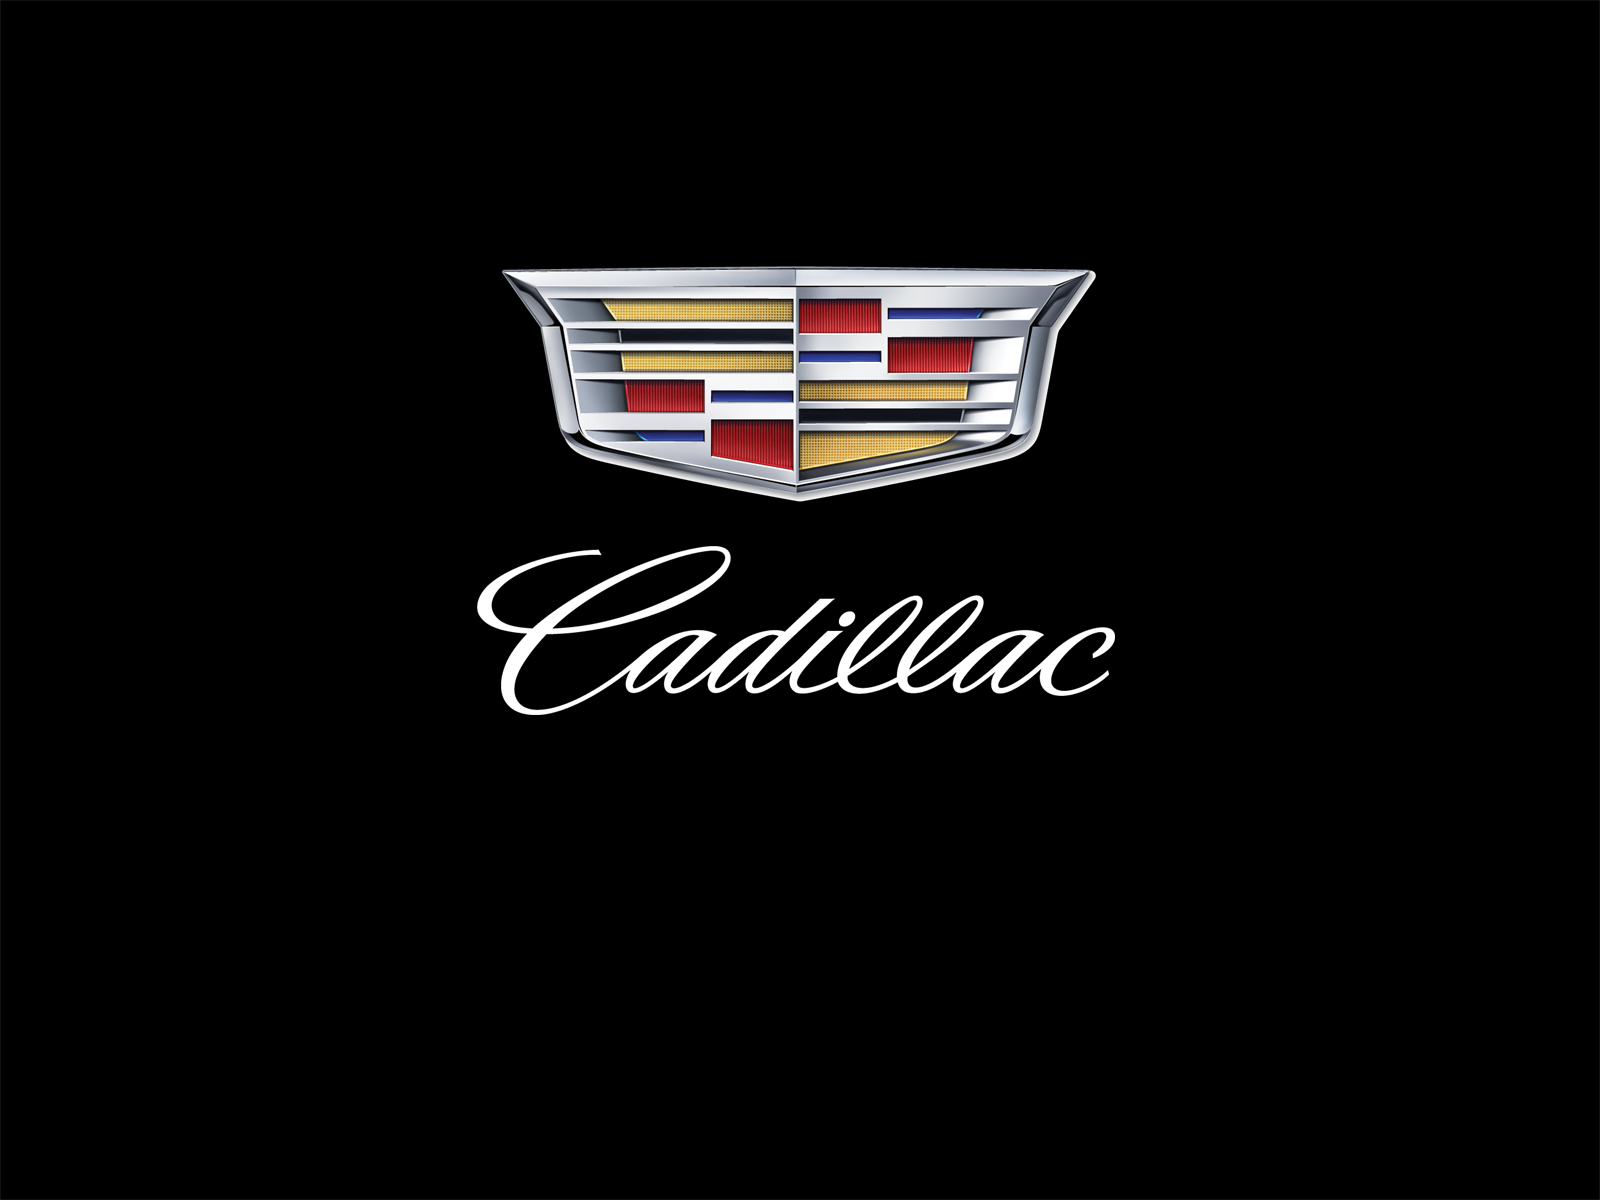 Cadillac Logos